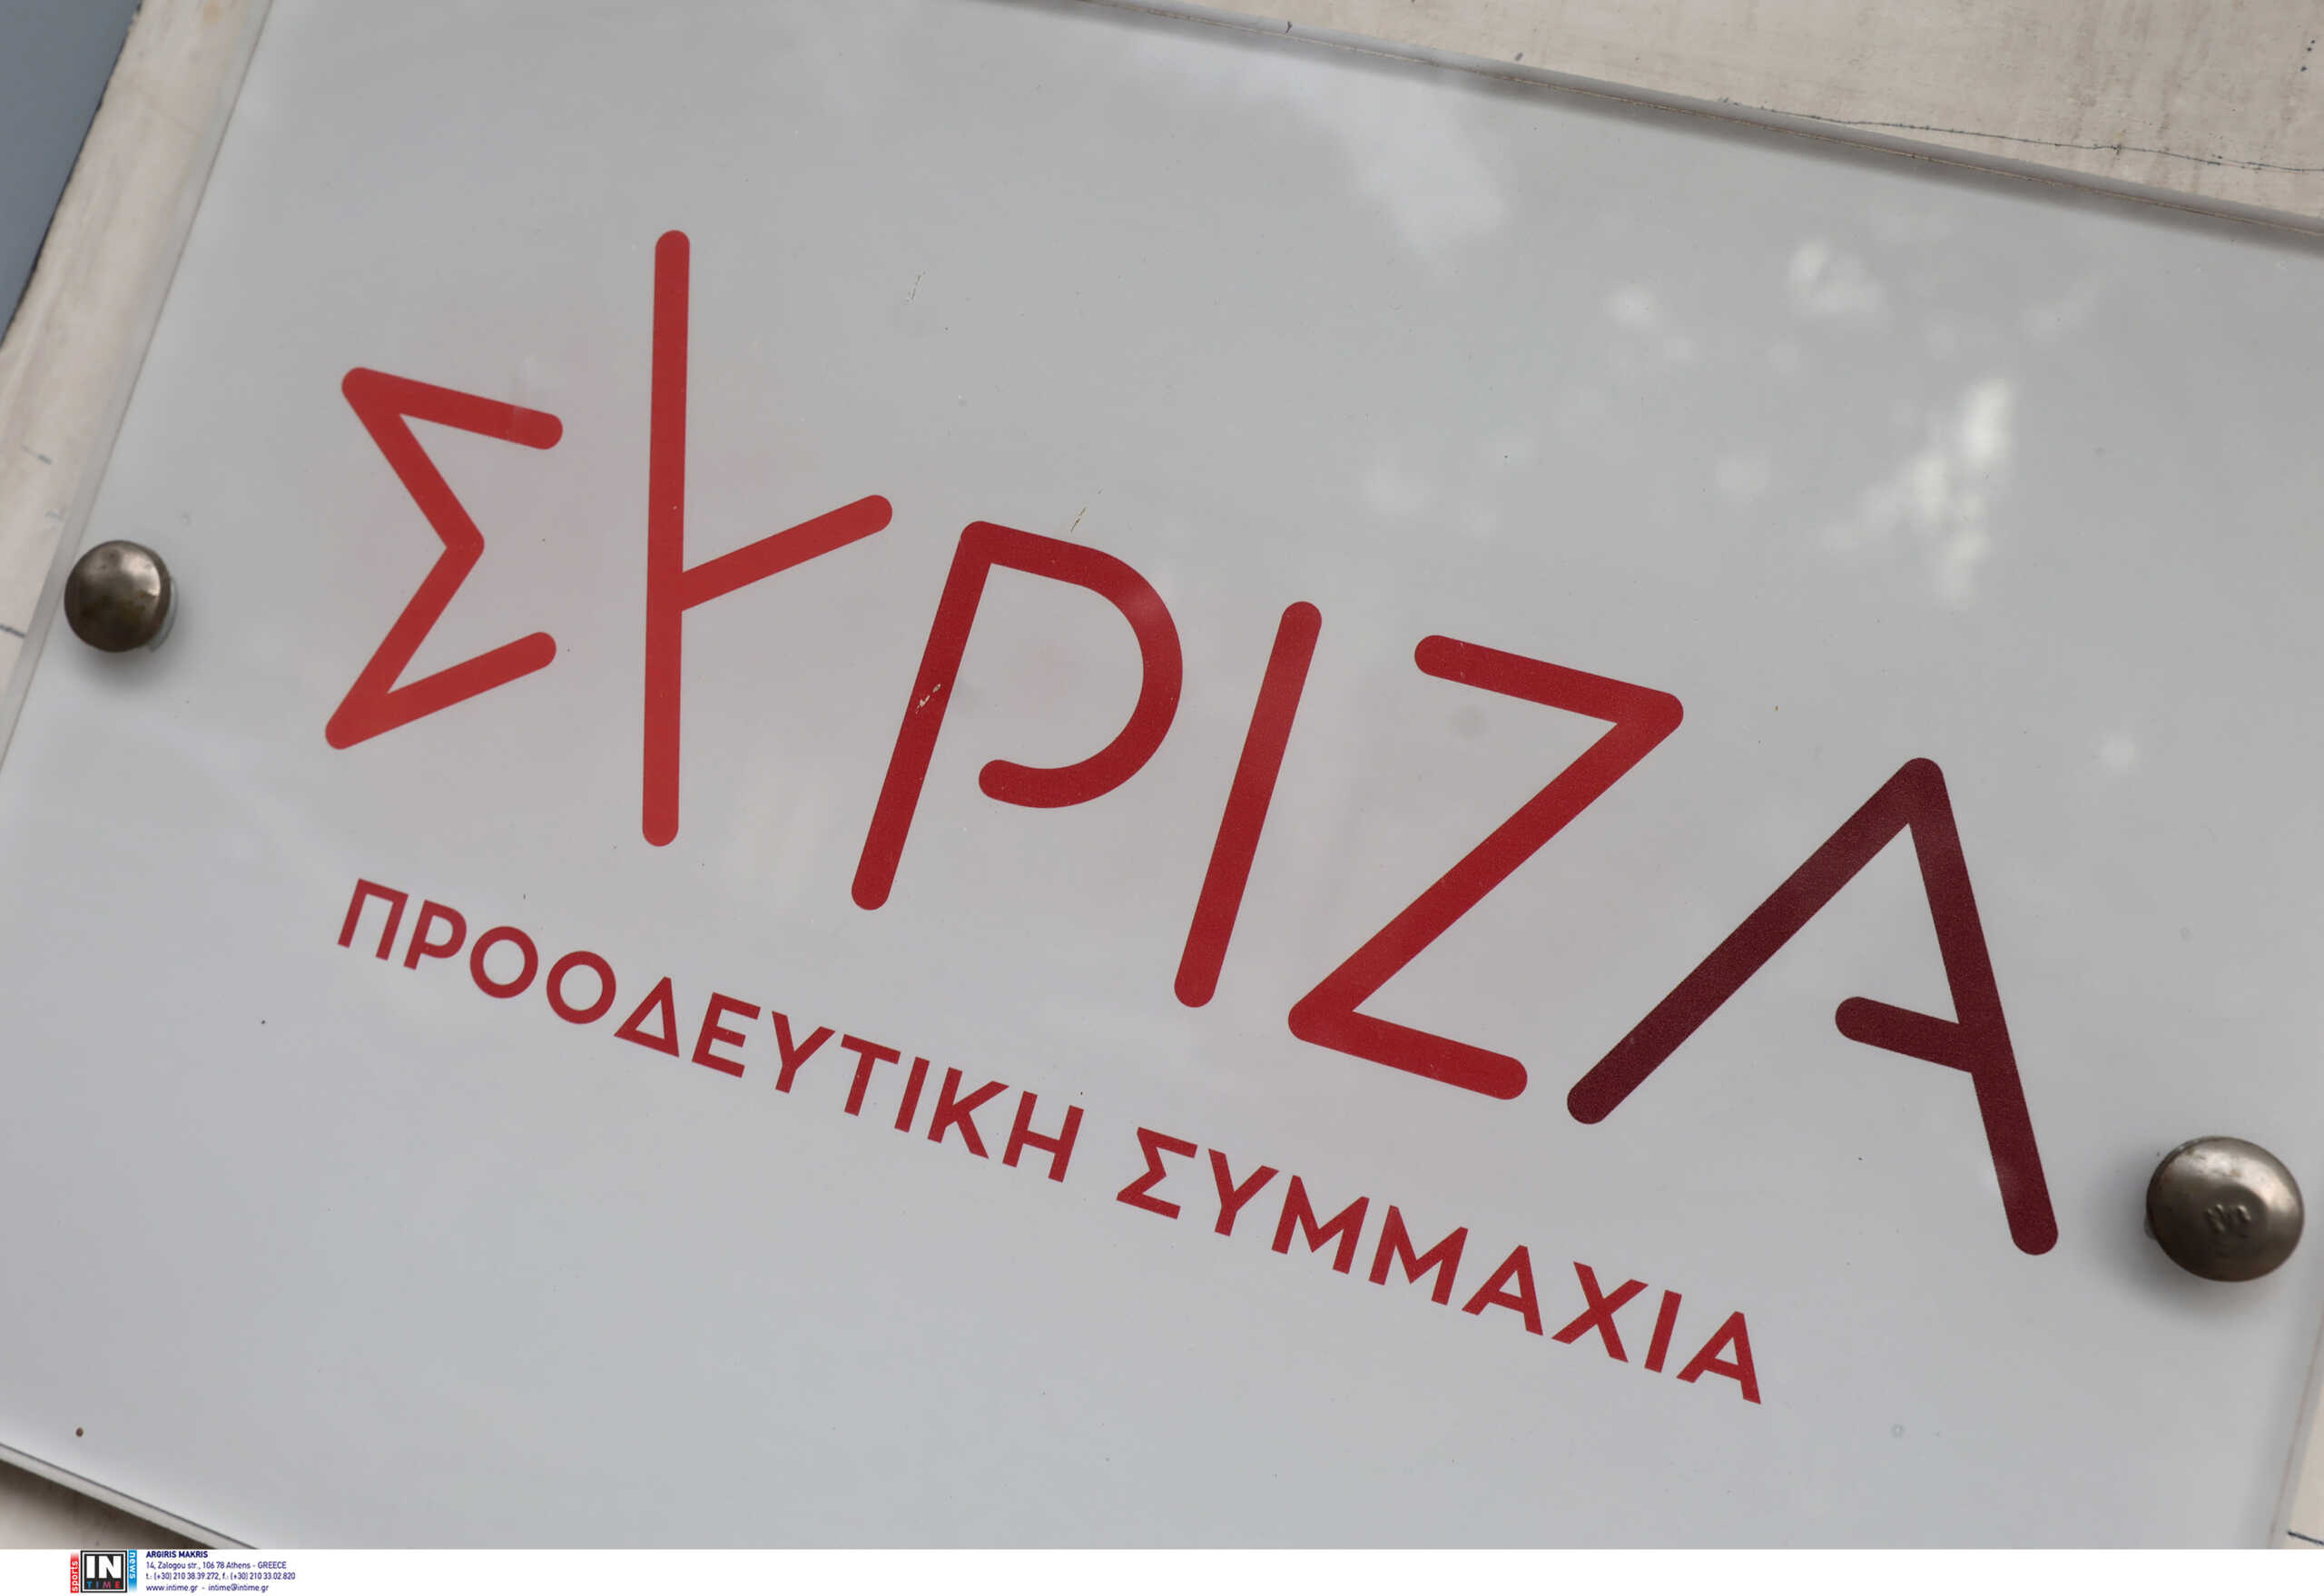 ΣΥΡΙΖΑ: Μετά την έξοδο Νικολάου μένει το πλιάτσικο και η ντροπή όσων την υπερασπίζονταν